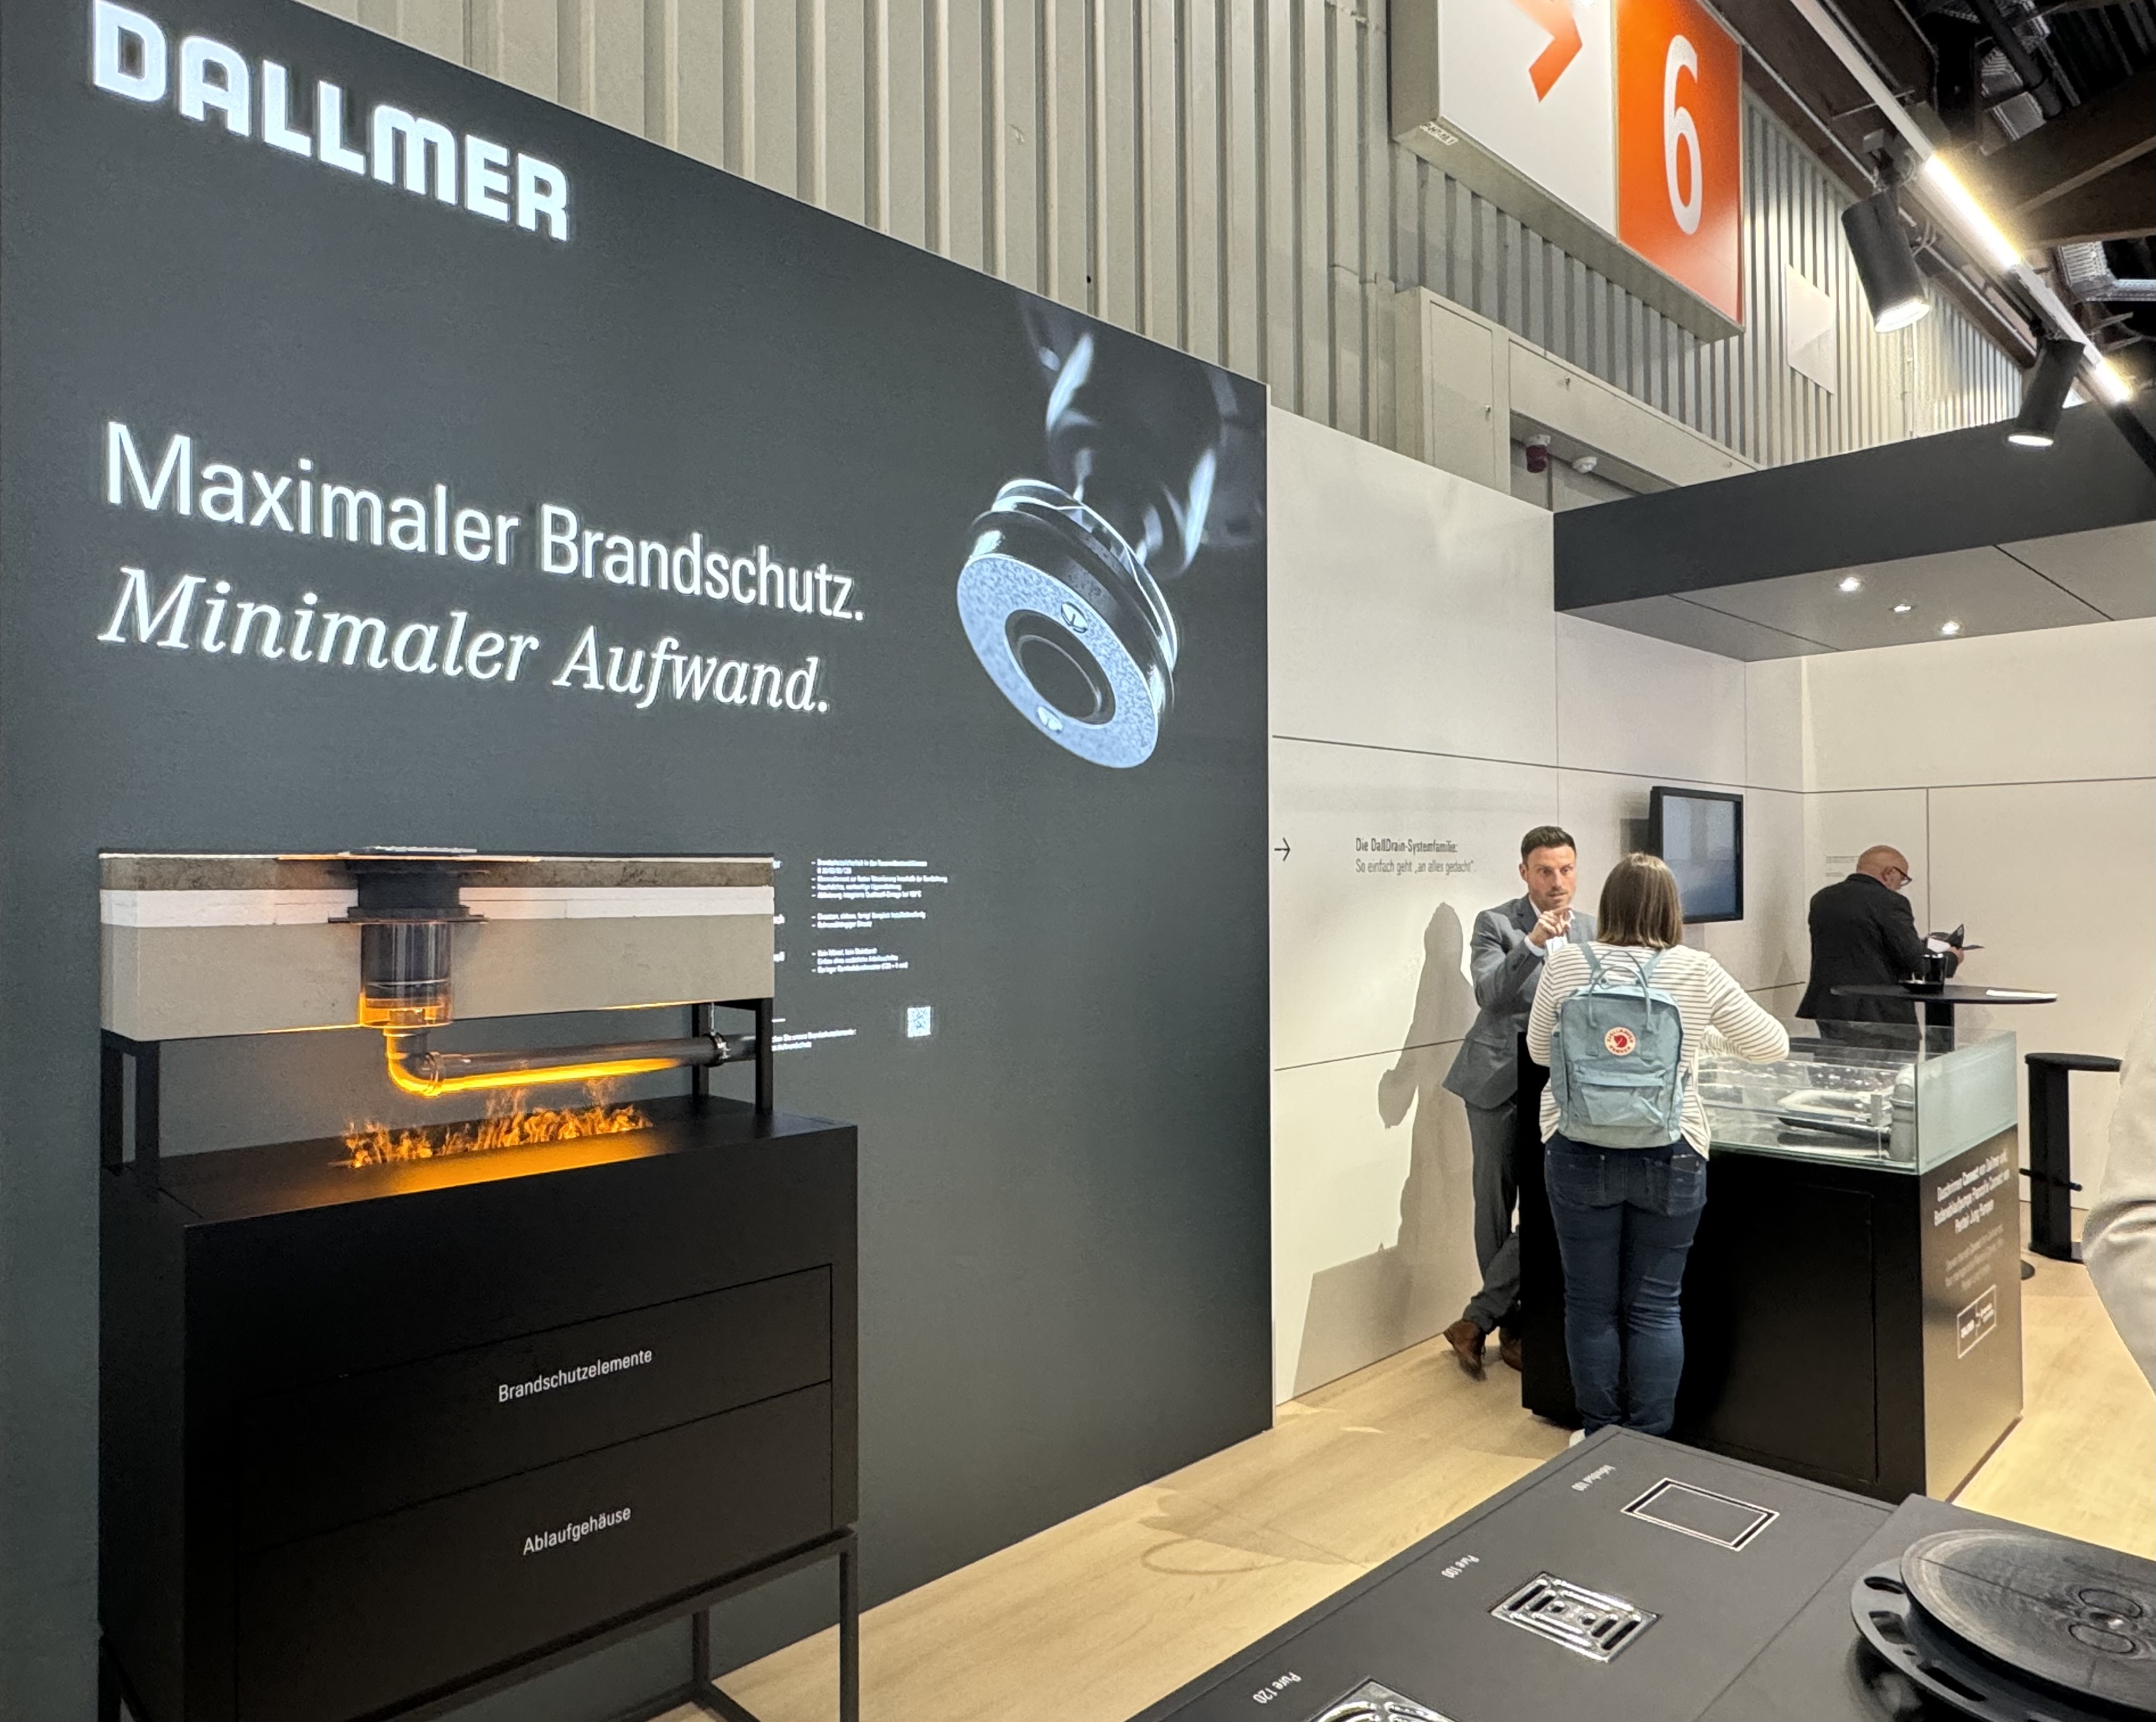 Als erste Neuheit präsentierte Dallmer auf der IFH die neuen Dallmer Brandschutzelemente.  Foto: Dallmer GmbH + Co. KG